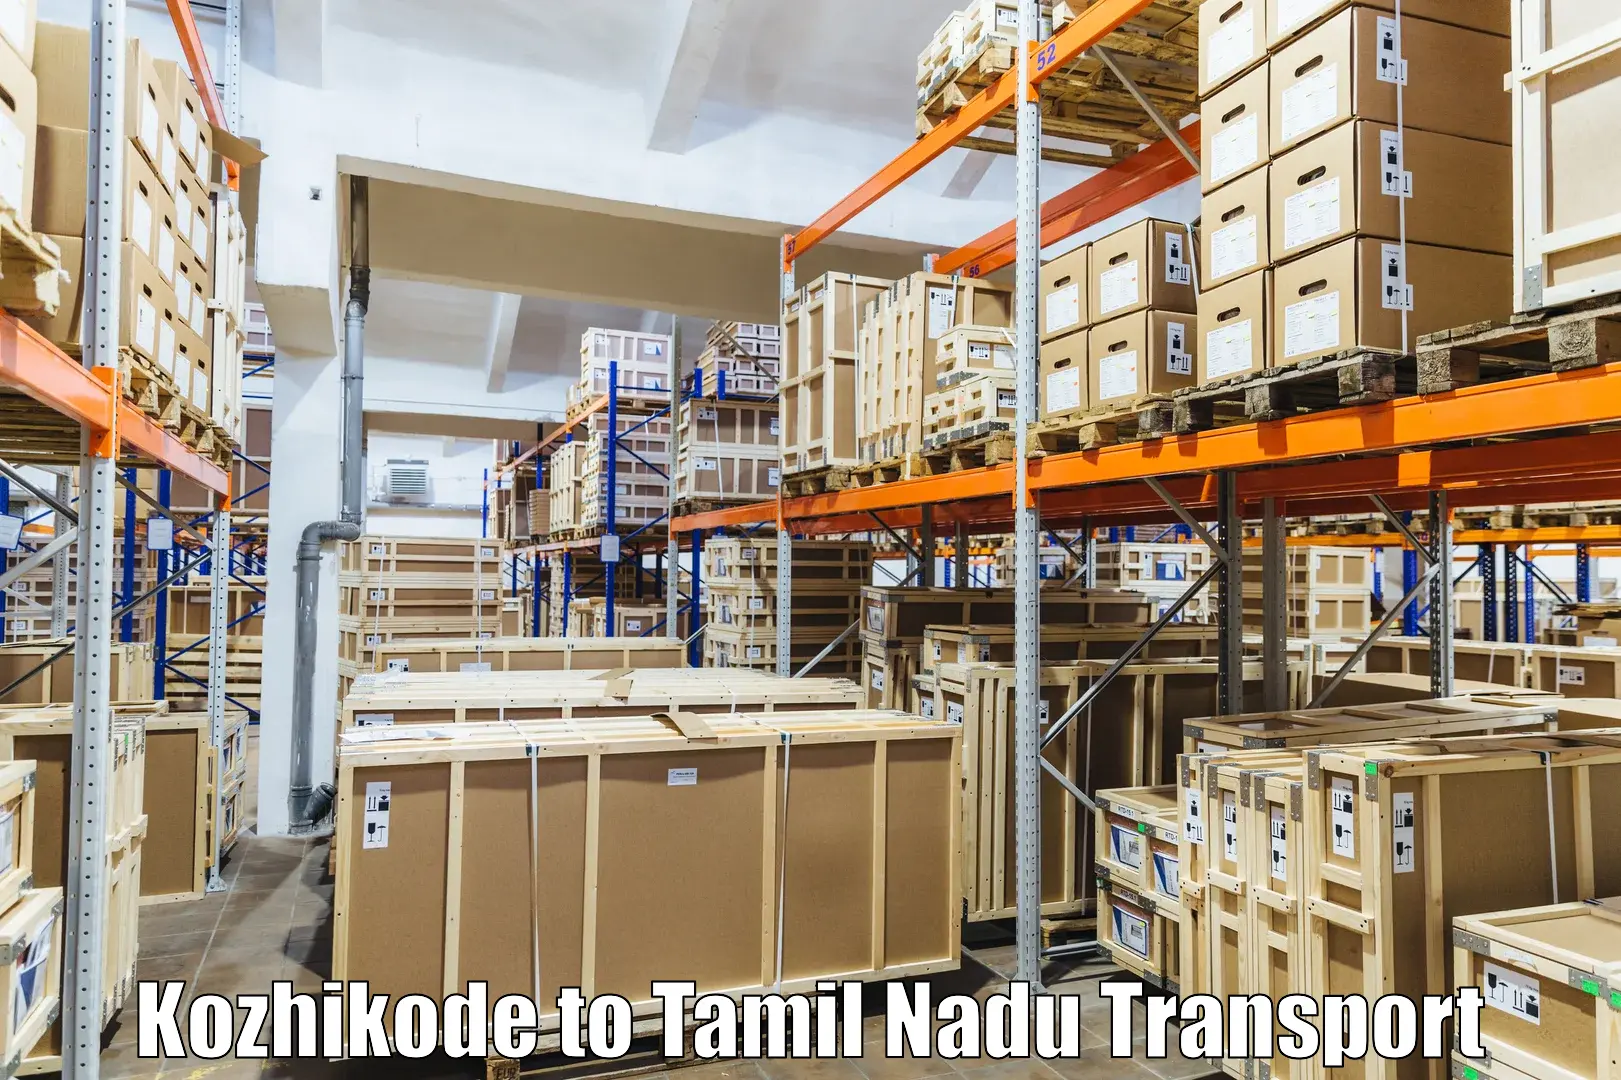 International cargo transportation services Kozhikode to Kumbakonam